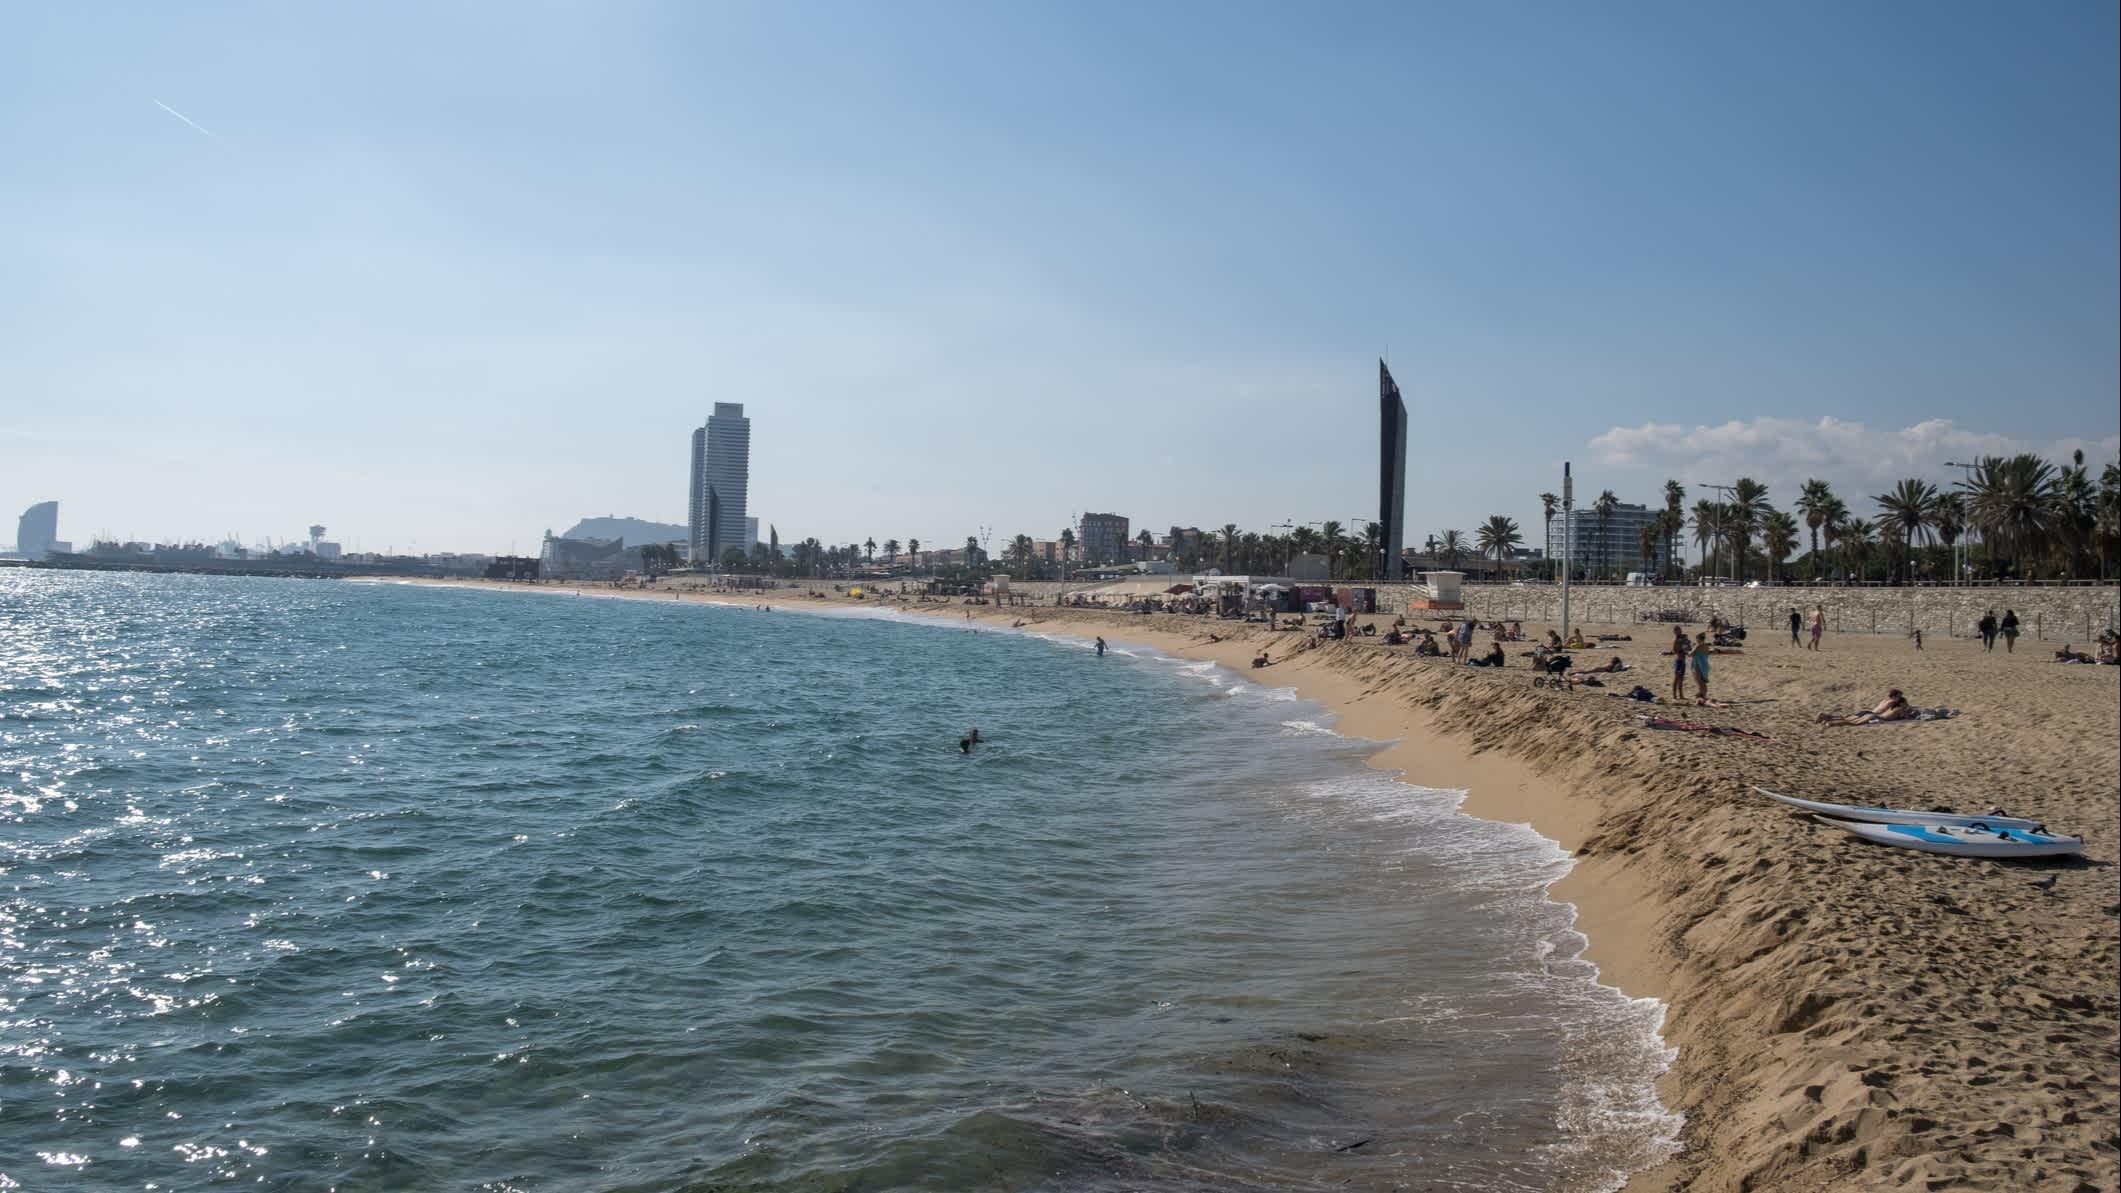 Vue sur la plage de sable de Bogatell en Espagne